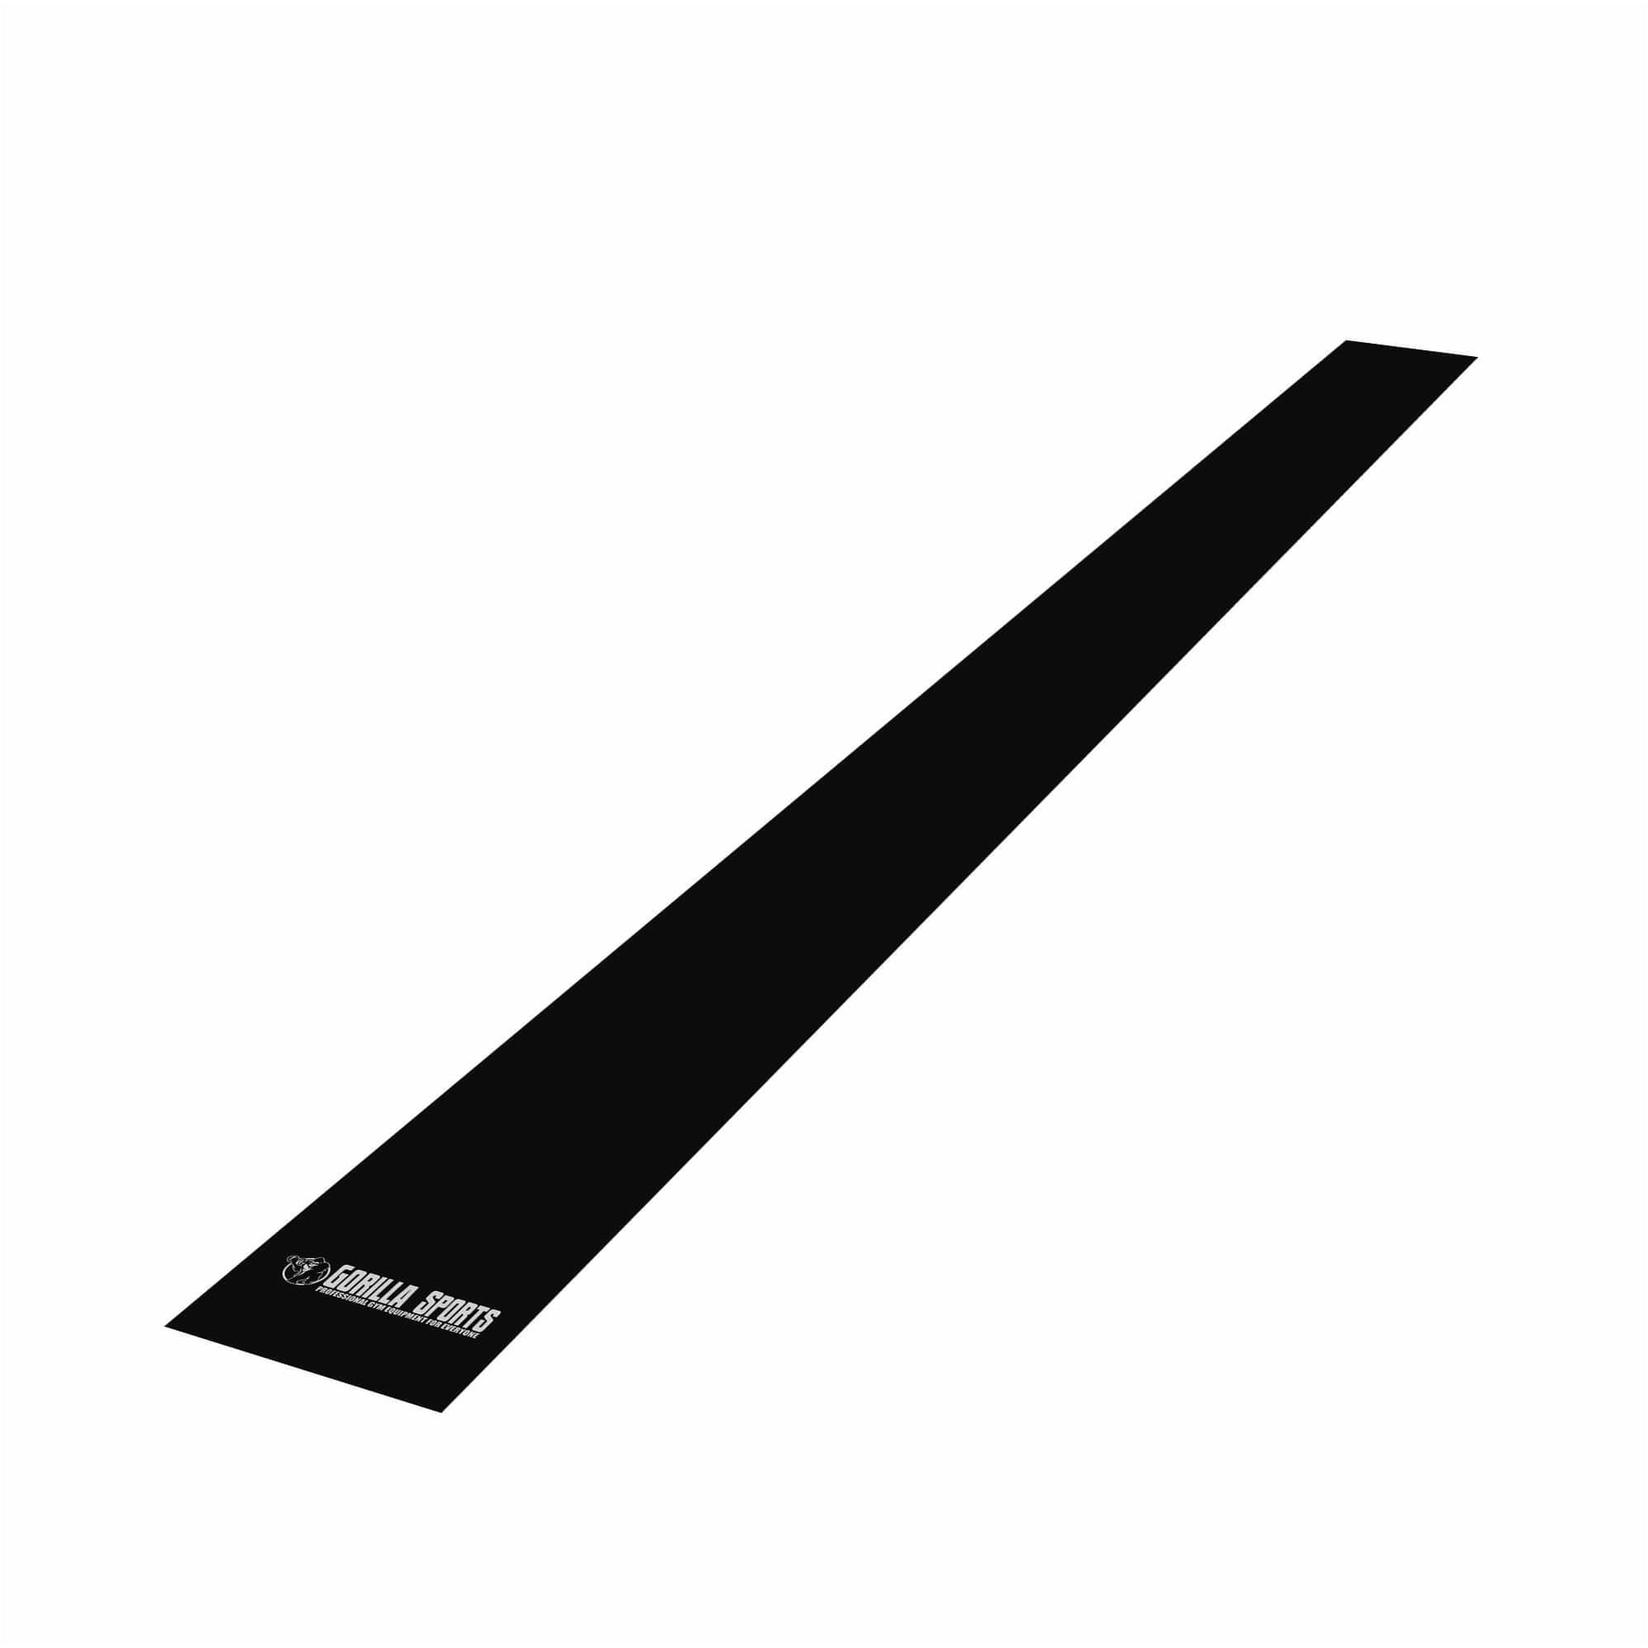 GORILLA SPORTS Elastična traka za vežbanje 200 cm u crnoj boji